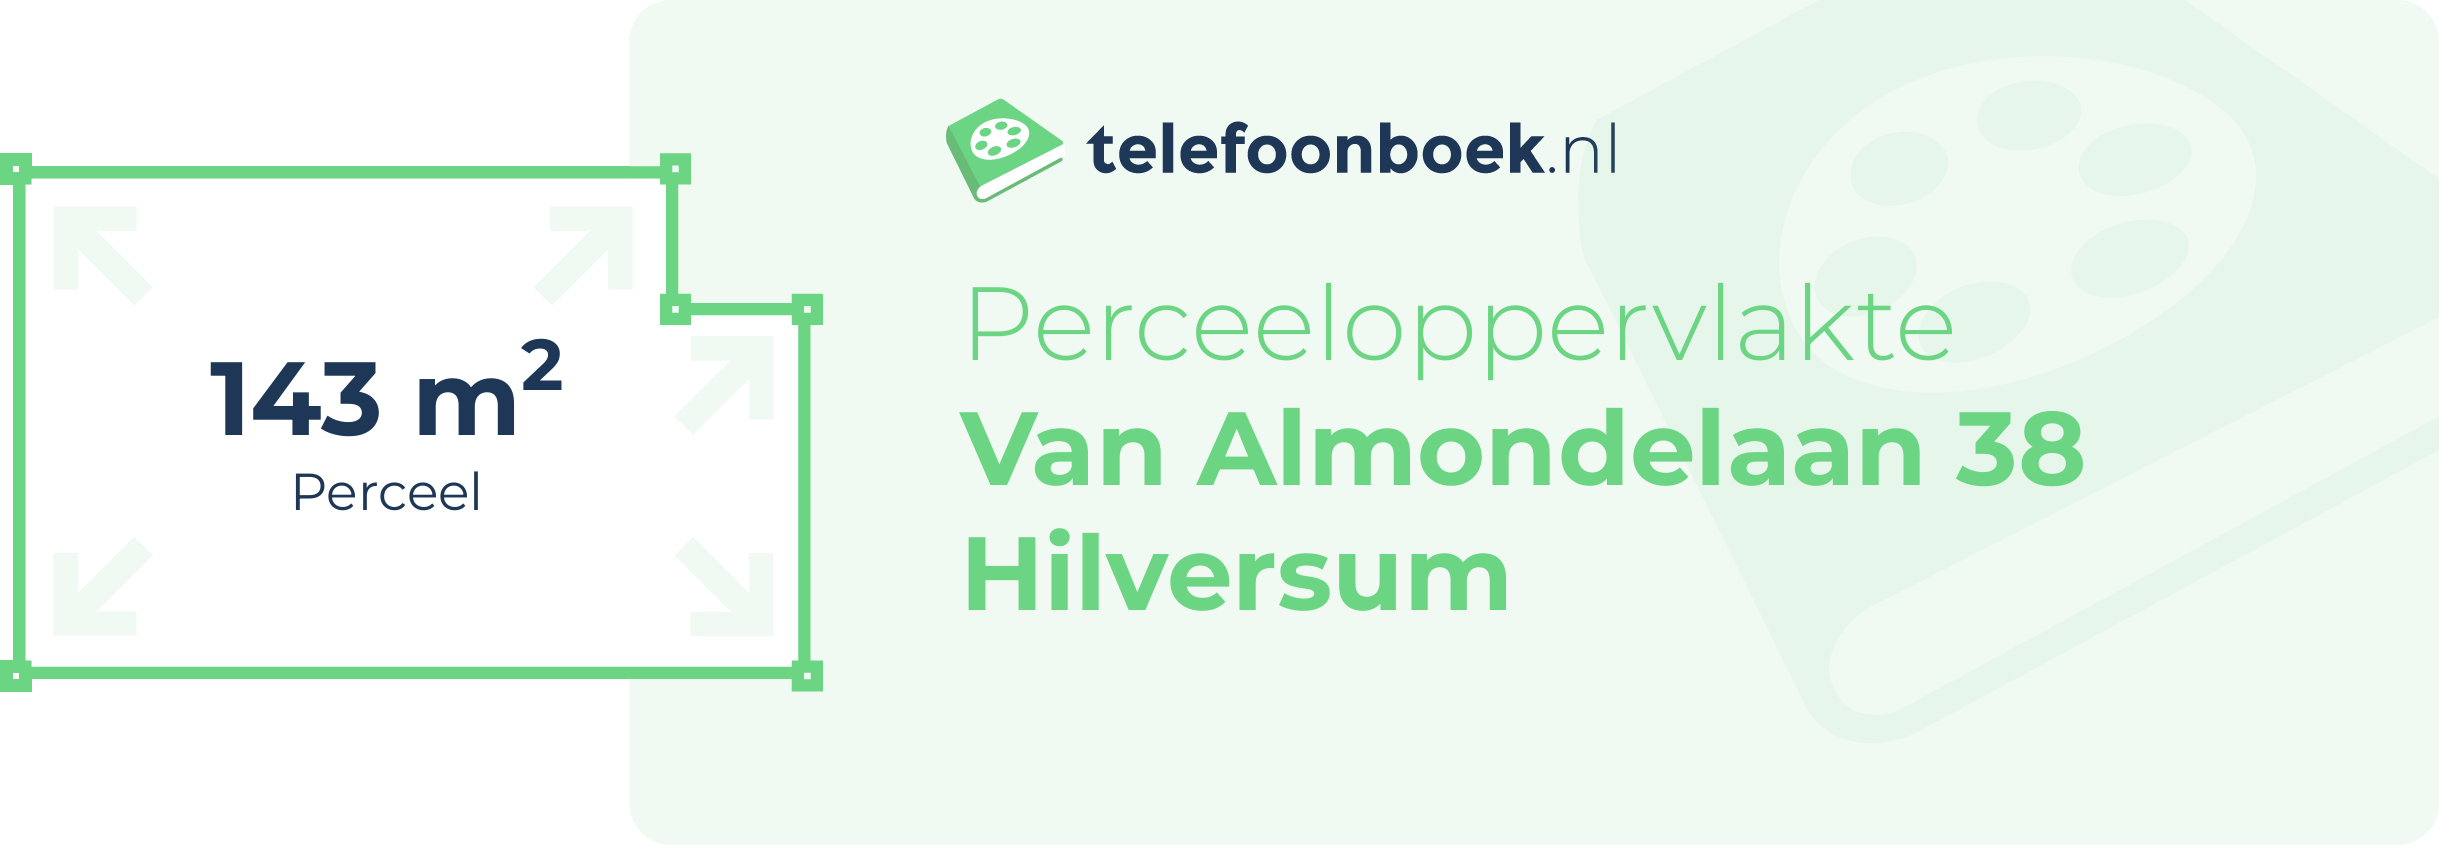 Perceeloppervlakte Van Almondelaan 38 Hilversum